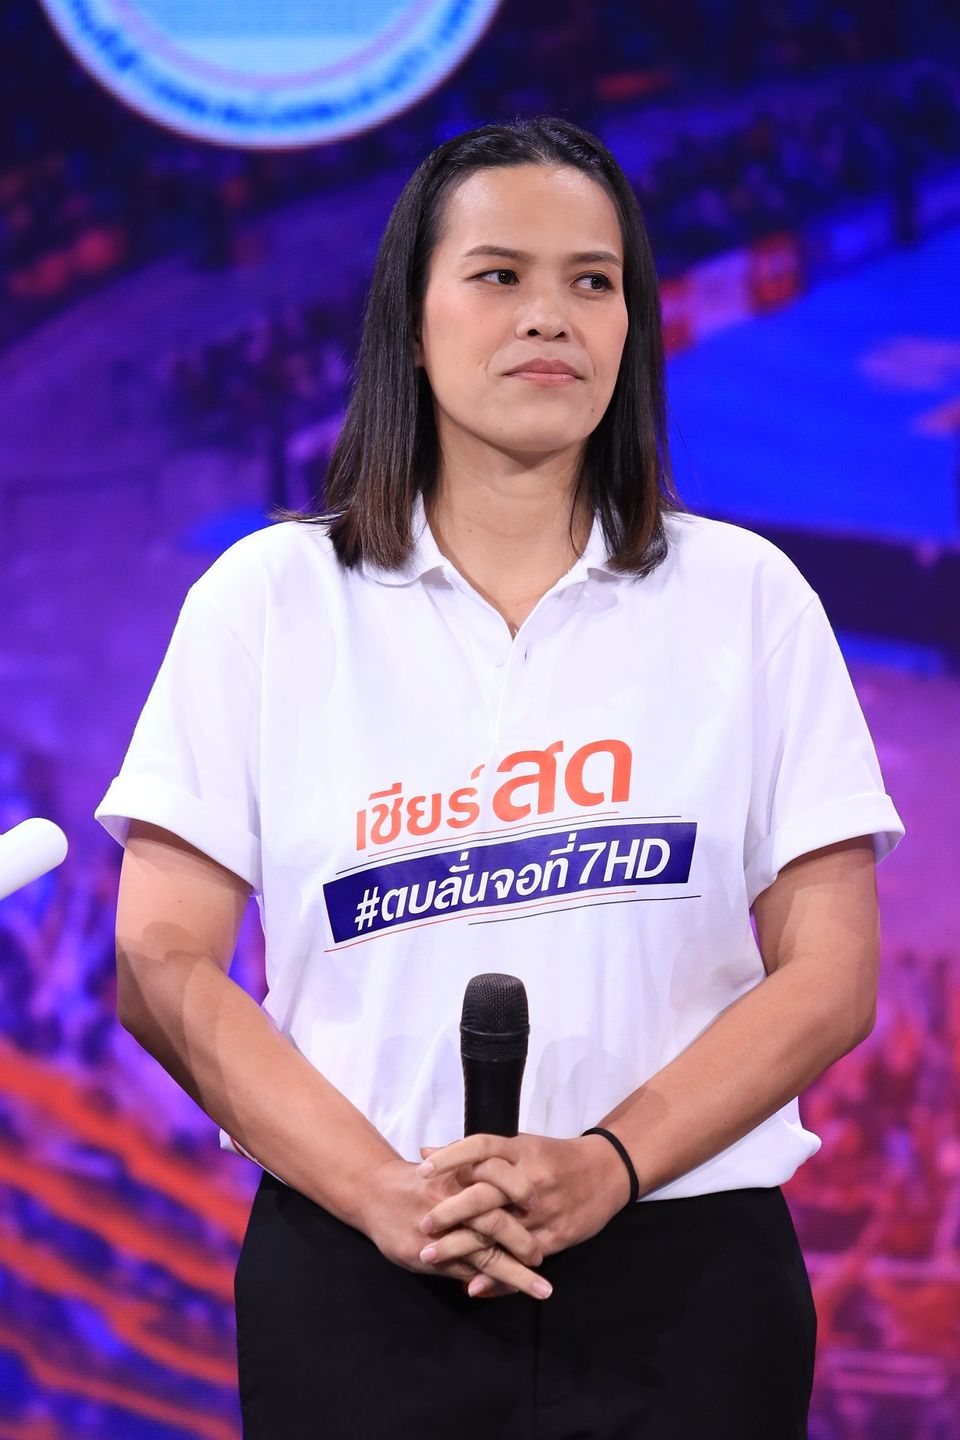 ช่อง 7HD – เทโรฯ ระเบิดความมัน สุดยอดกีฬาระดับโลก เพื่อชาวไทย “วอลเลย์บอล เนชันส์ ลีก (VNL 2023 - 2024)” จัดเต็มถ่ายทอด 60 แมตช์ ยิงสดลูกยางสาวไทยทุกนัด ! #ตบลั่นจอที่7HD เริ่ม 30 พ.ค.นี้